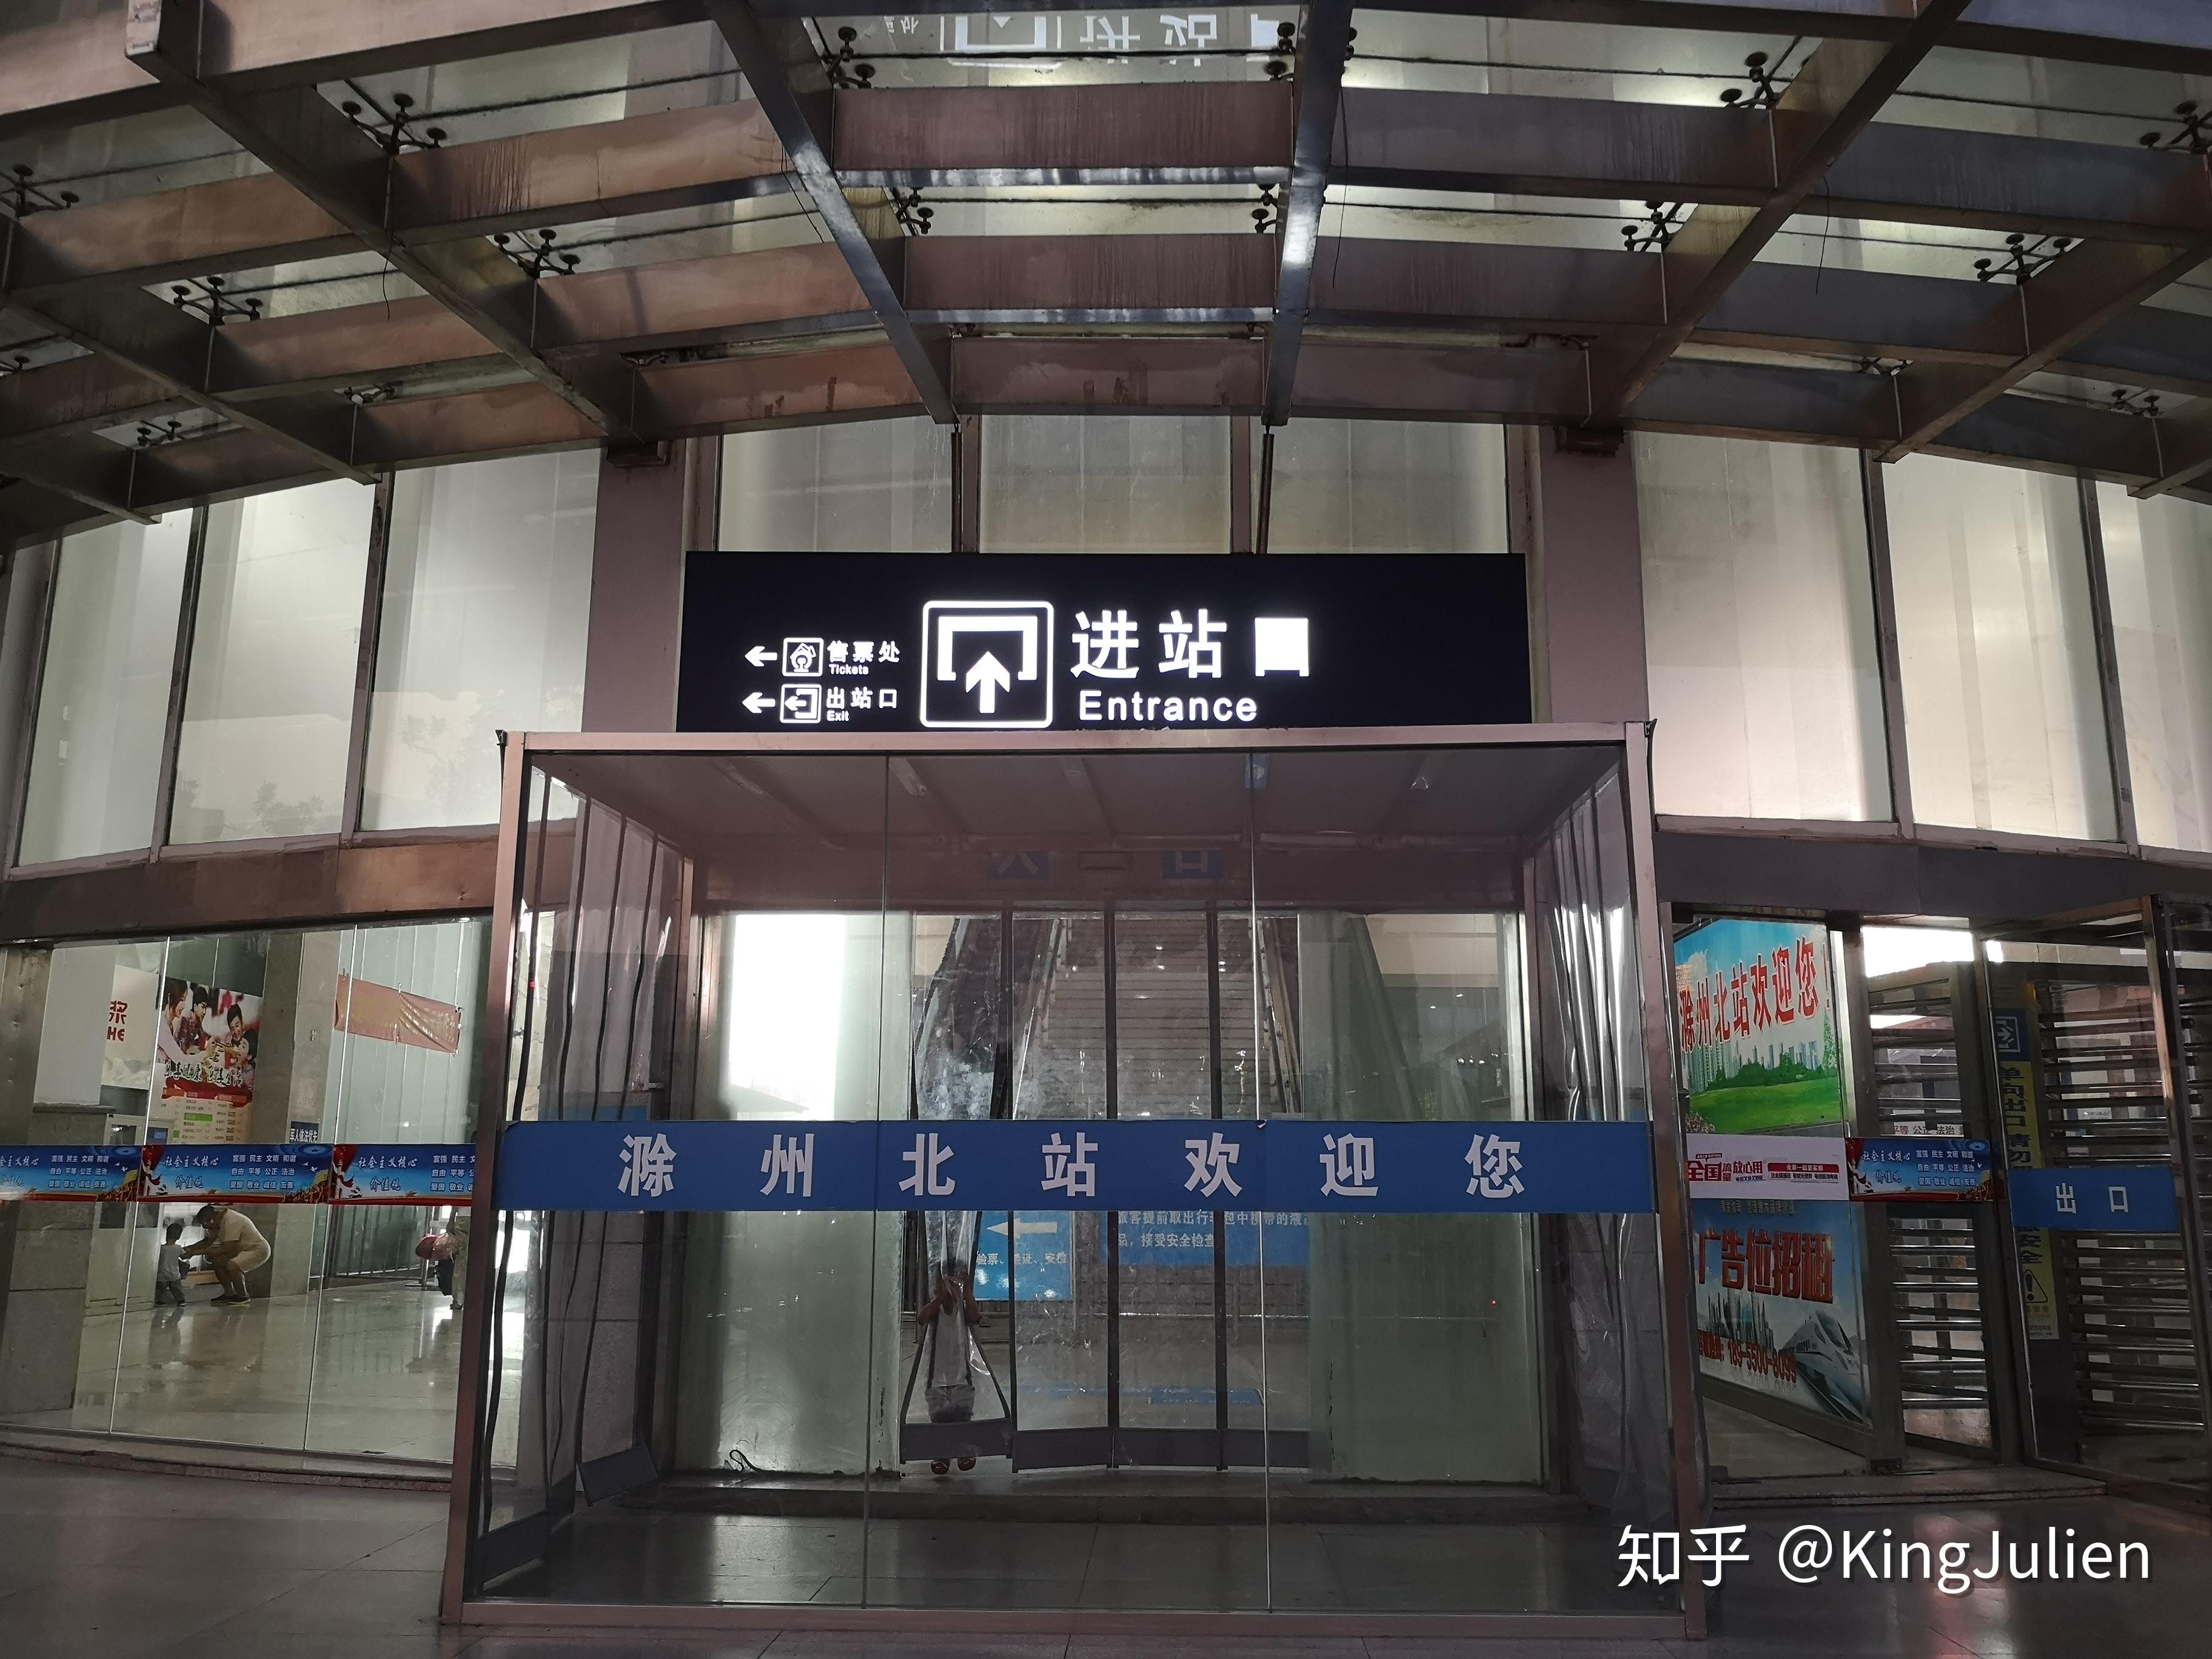 探访京沪线沿线车站(4)——滁州北站,暨量产高寒版本复兴号cr400bf